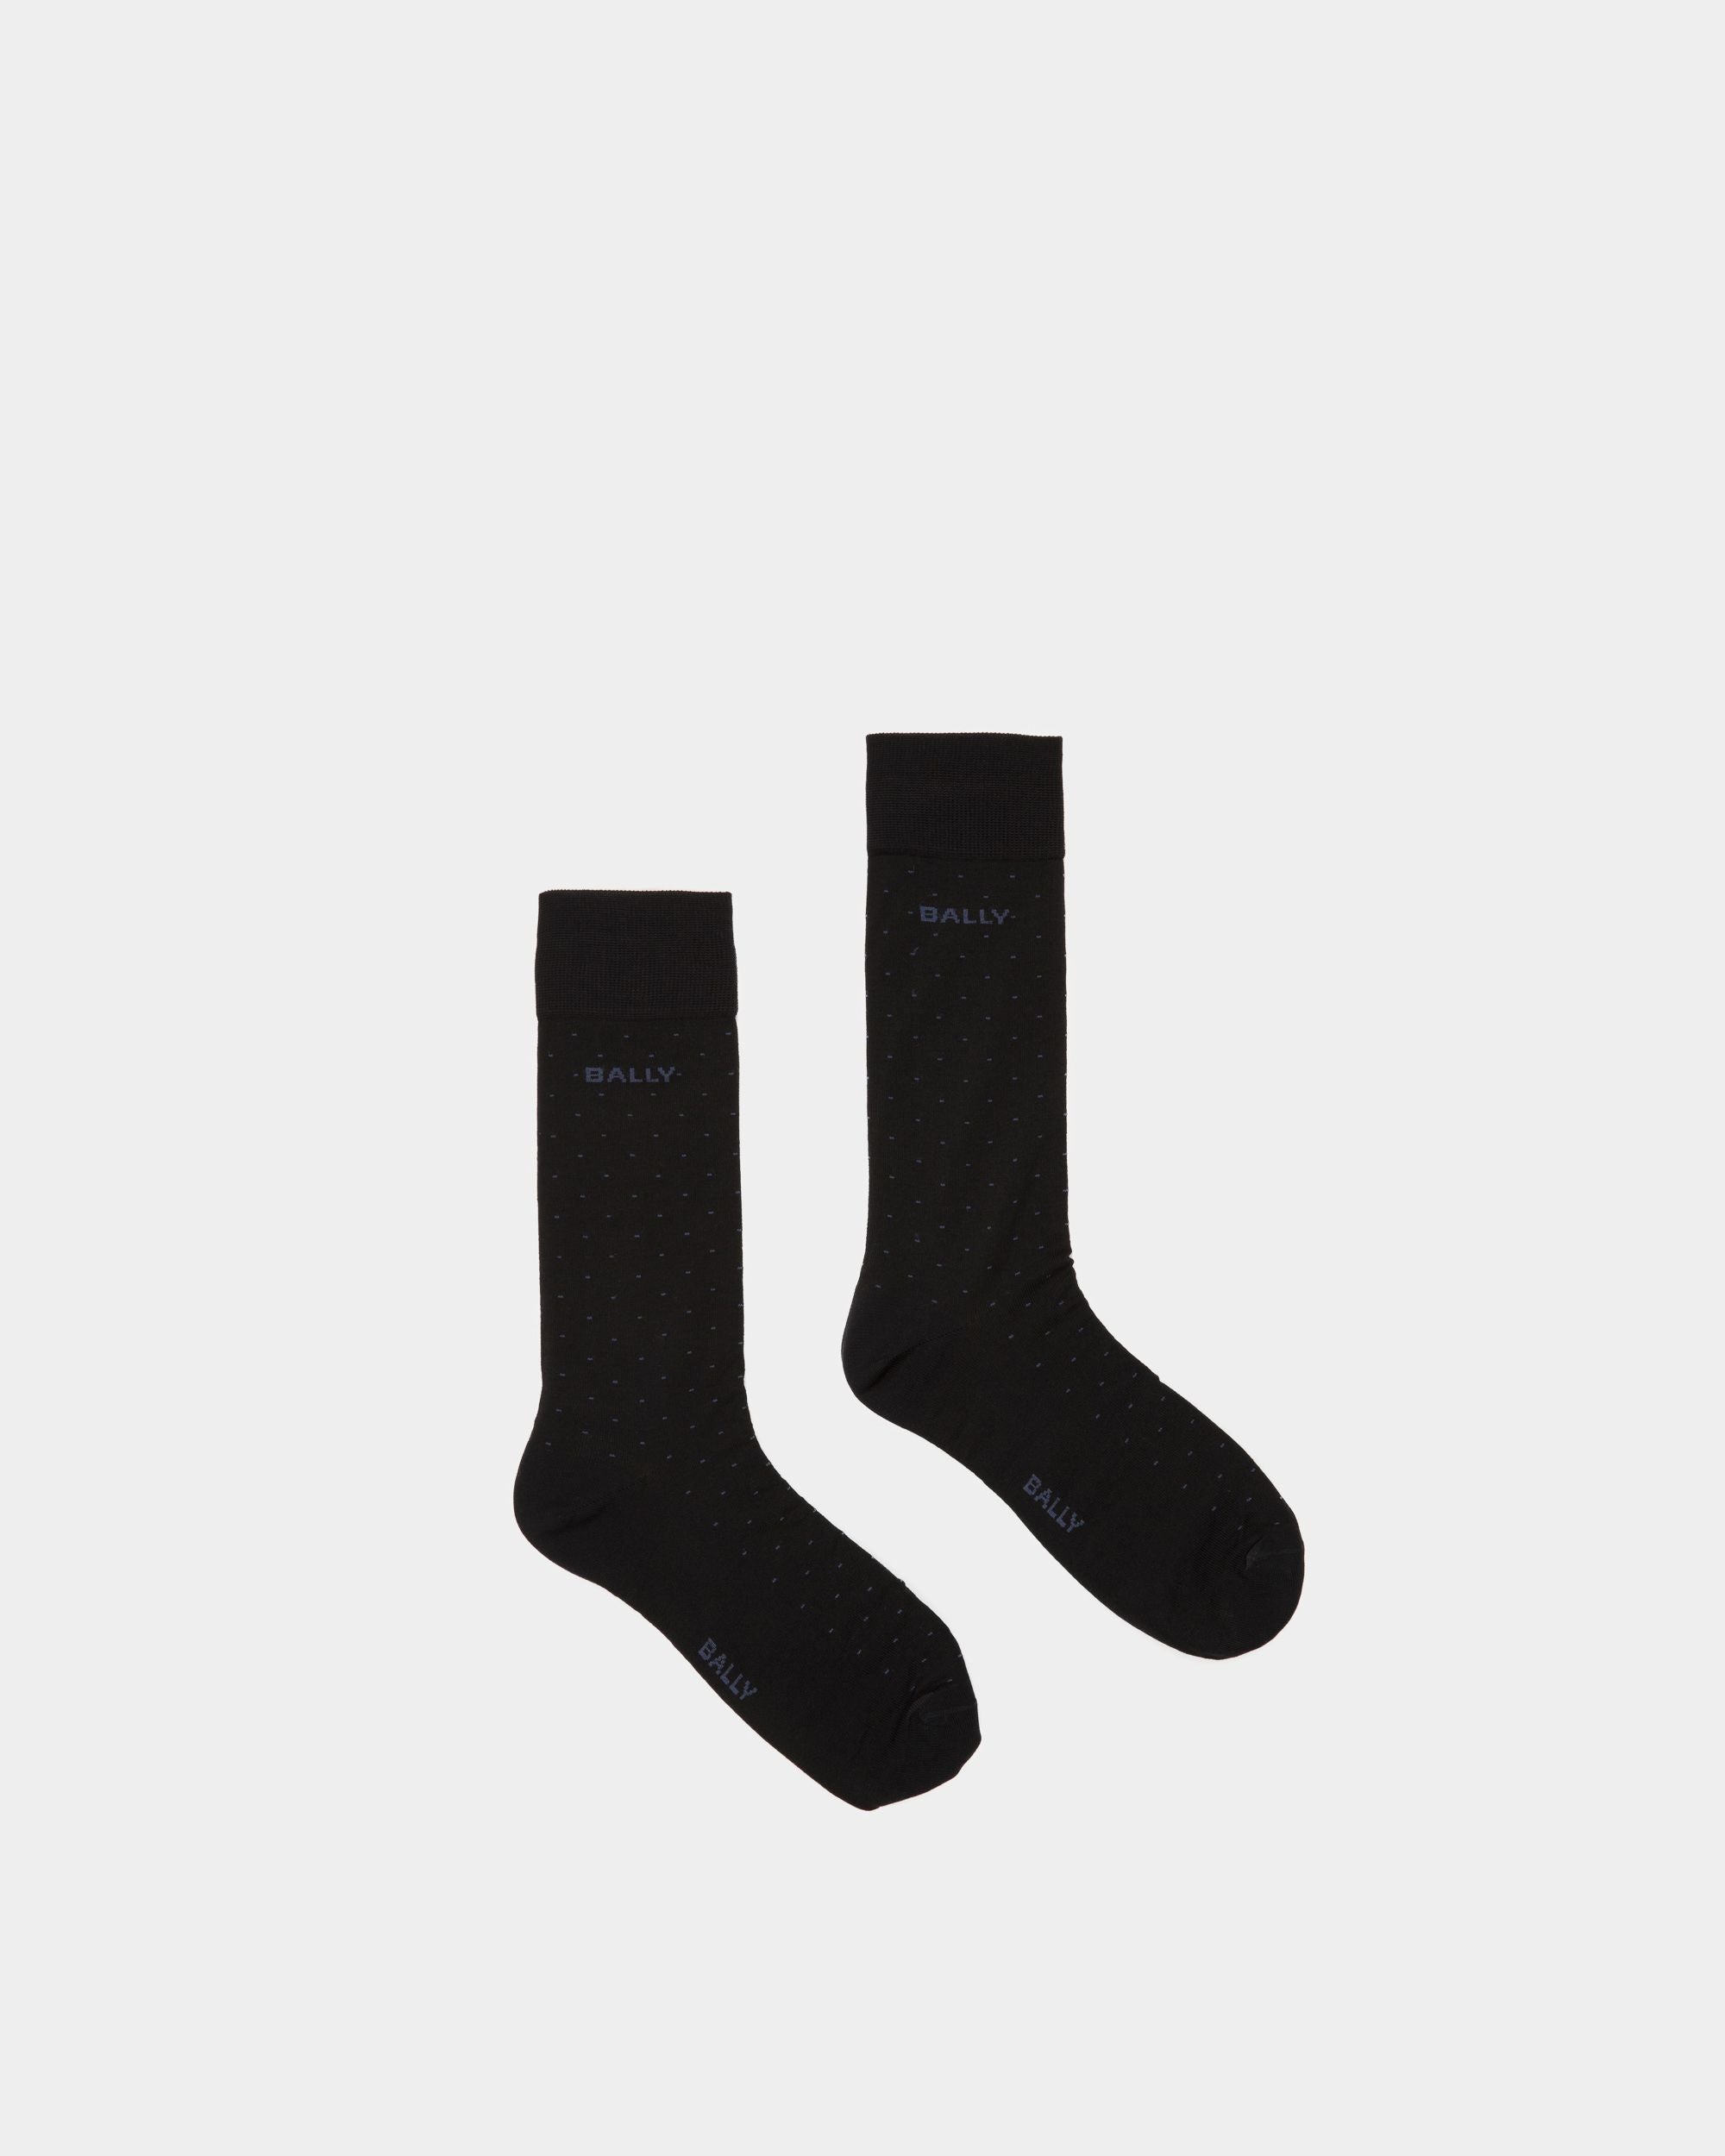 Ribbed Logo Socks | Men's Socks | Ink Cotton Mix | Bally | Still Life Top